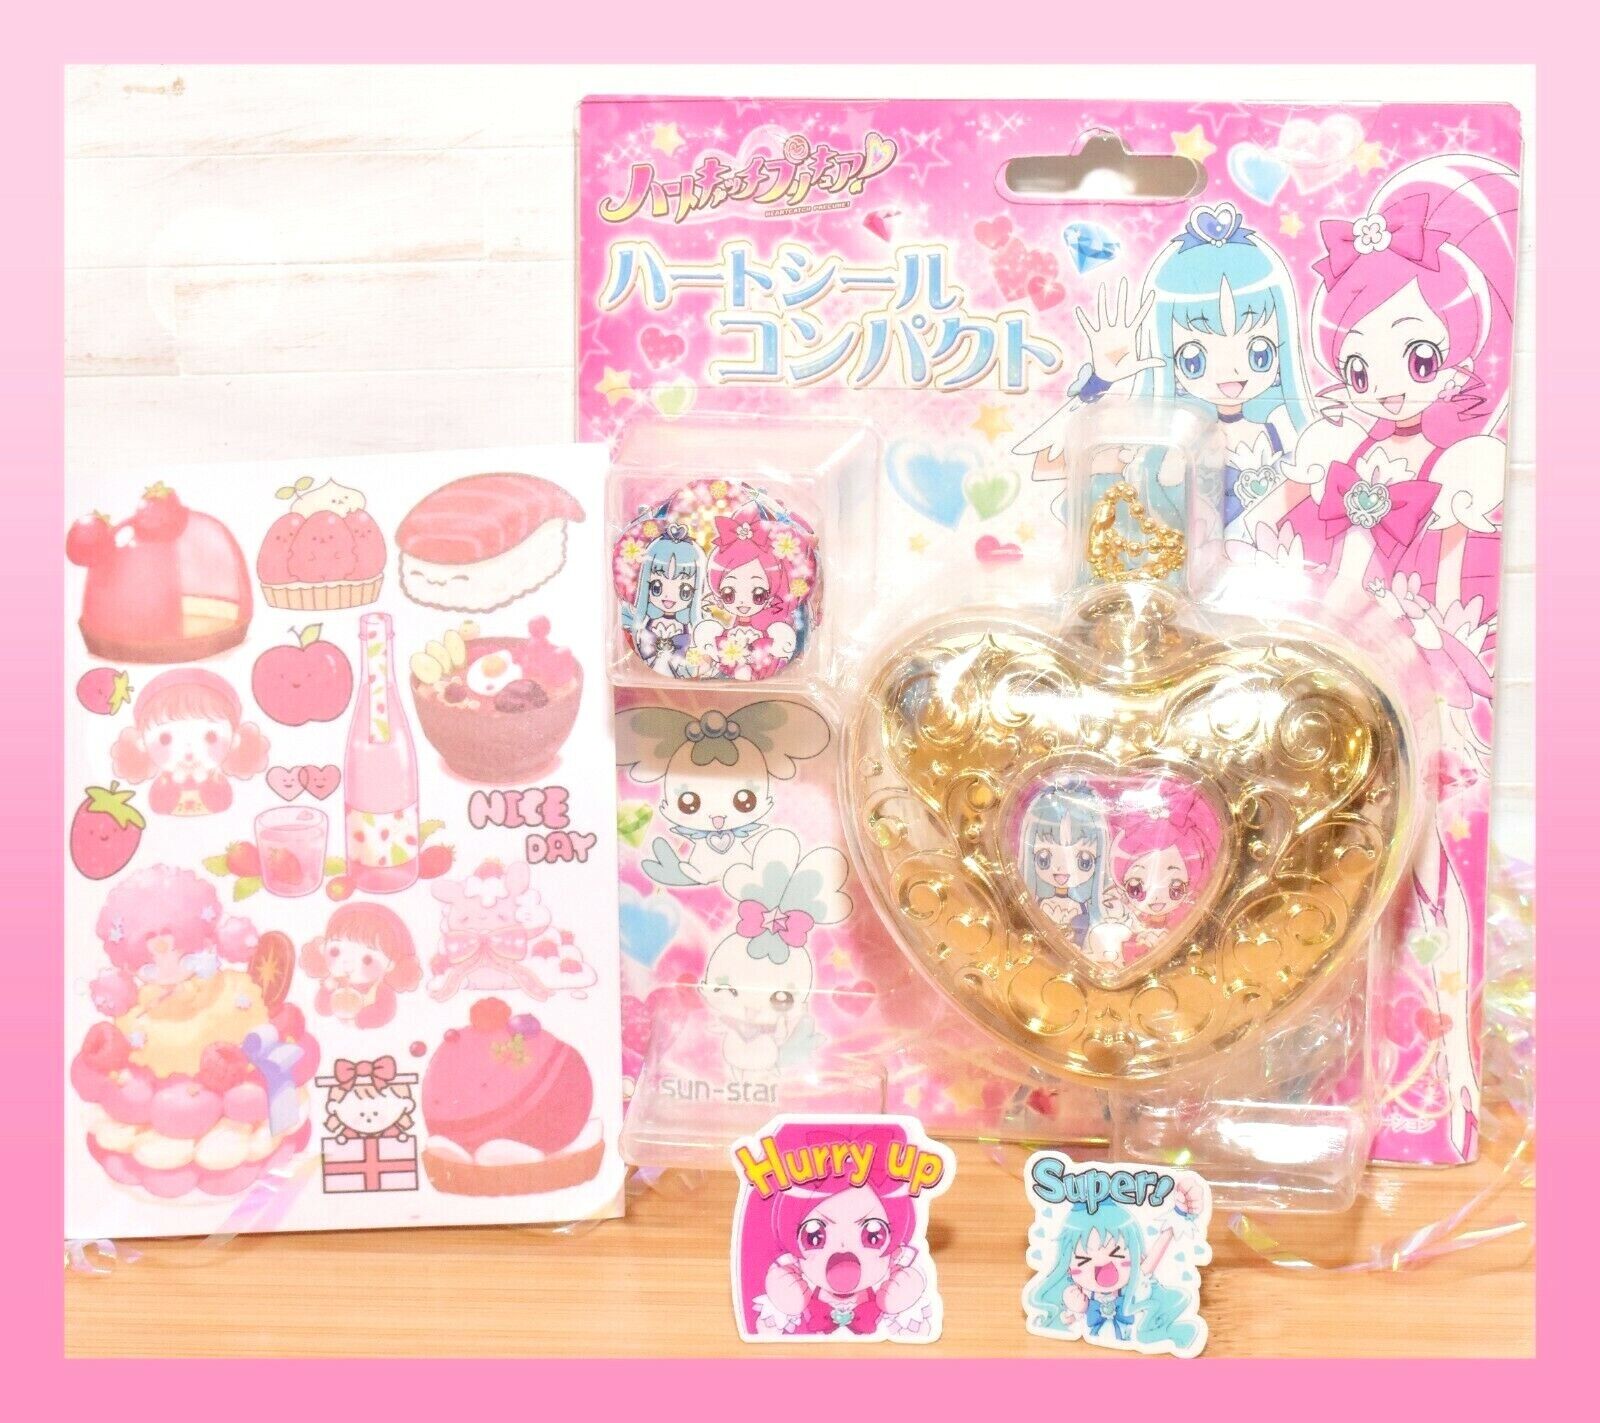 Heartcatch Precure Pretty Cure Heart Seal Compact Pact Sun-Star Banpresto